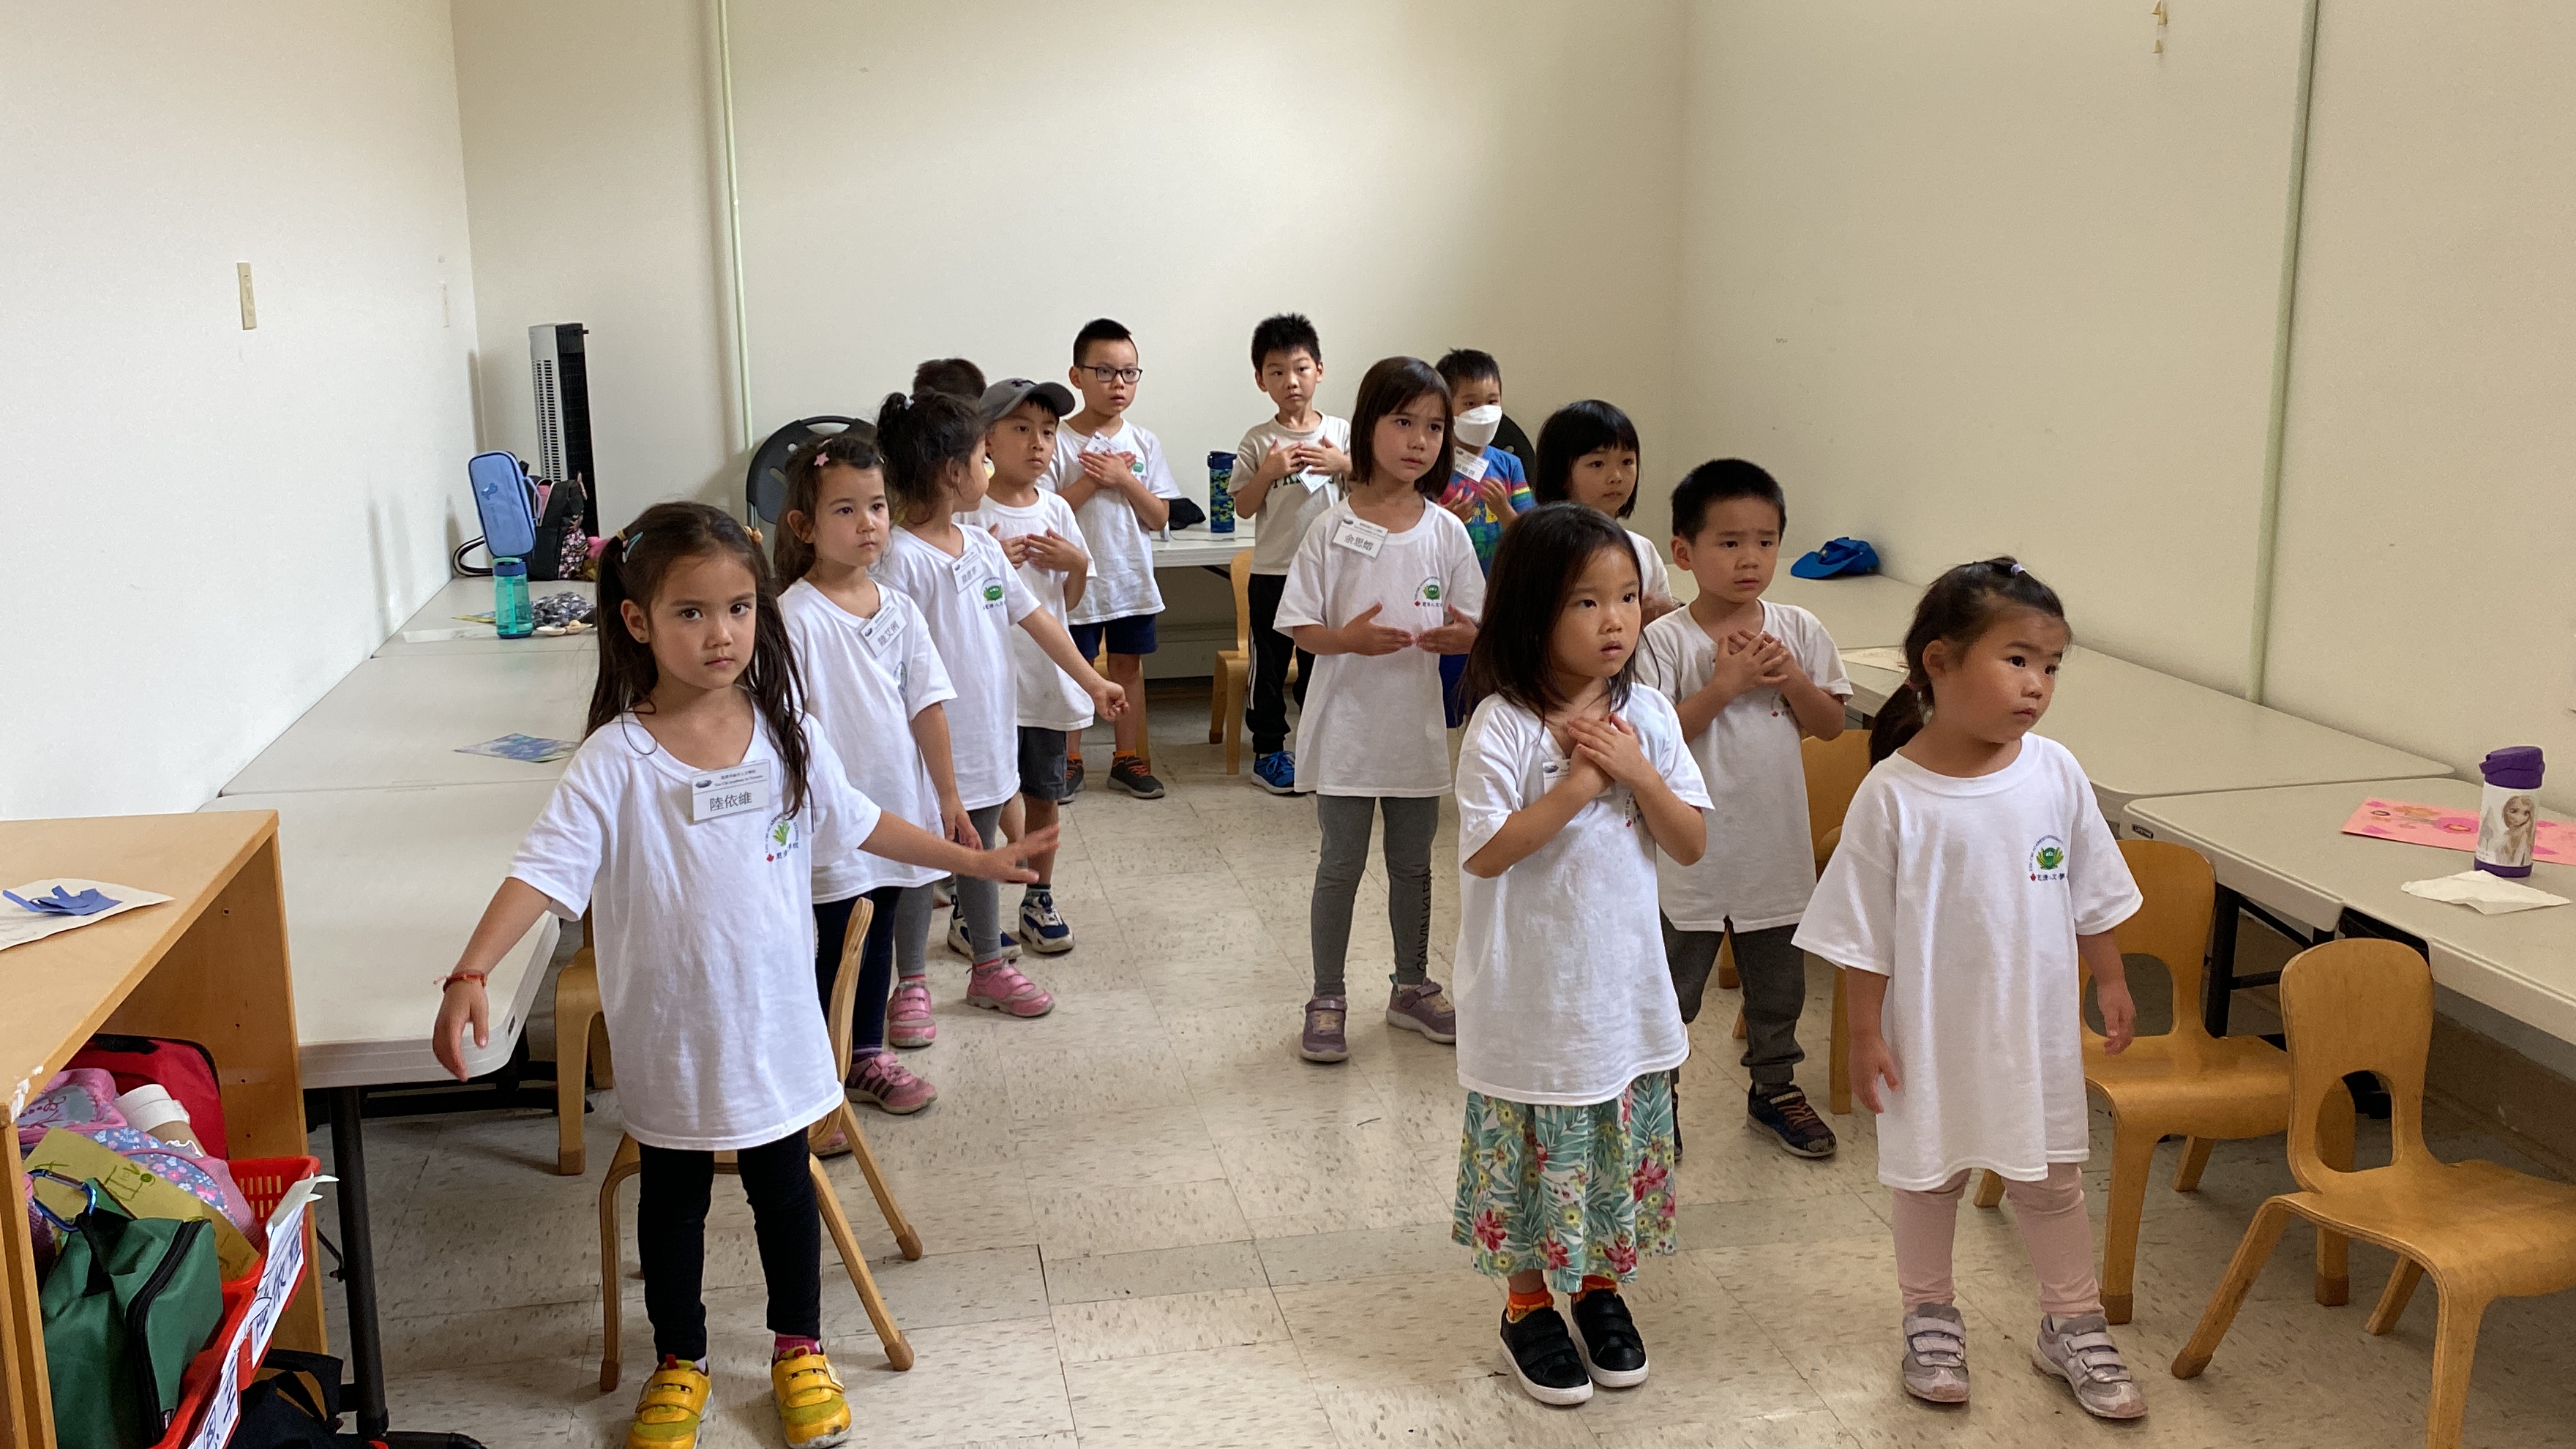 小班組的學員們在進行華語歌唱練習